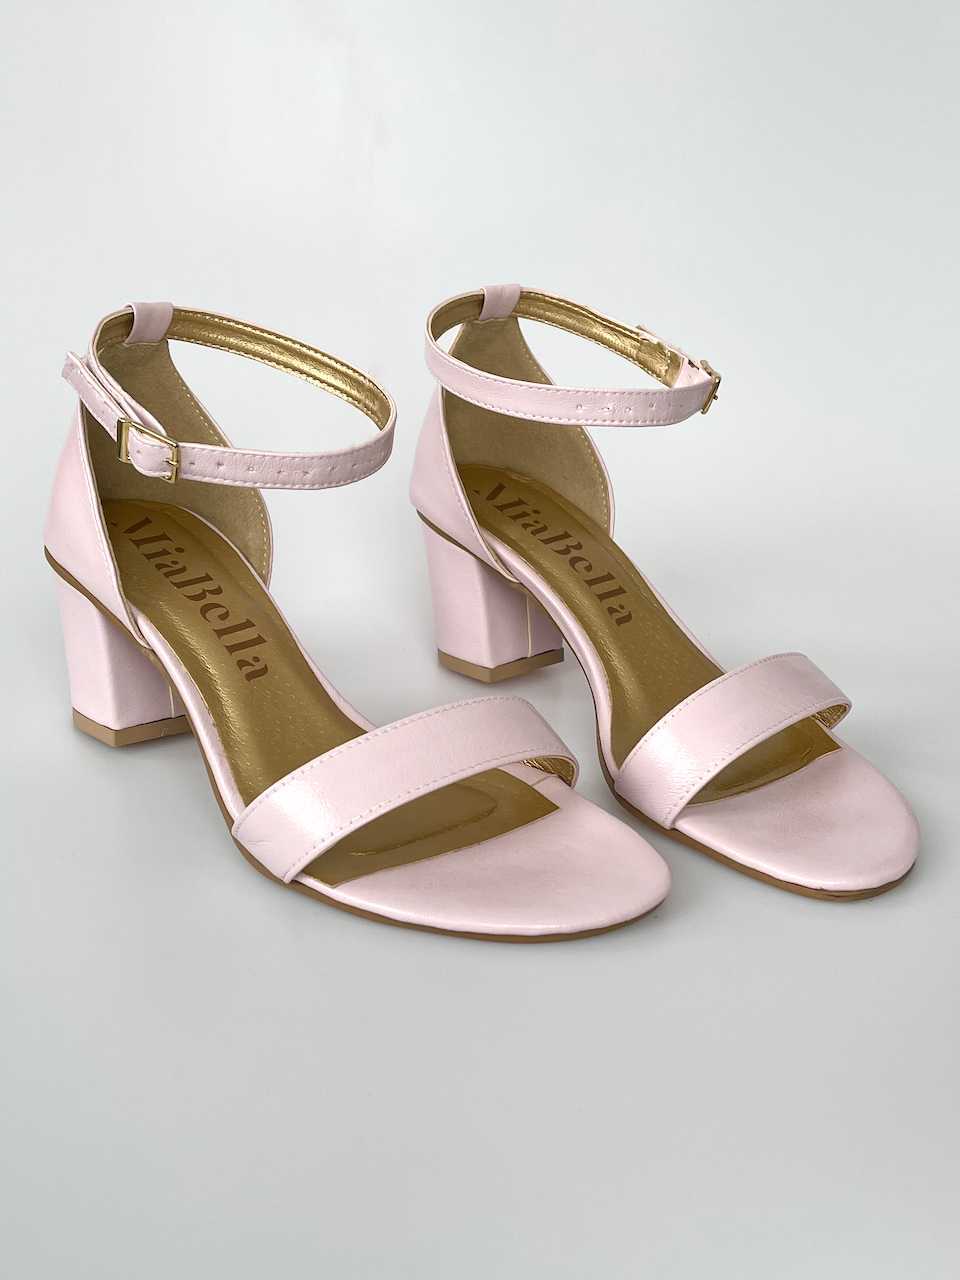 Růžové sandálky na podpatku 33 - stélka 20,5cm / obvod 19cm